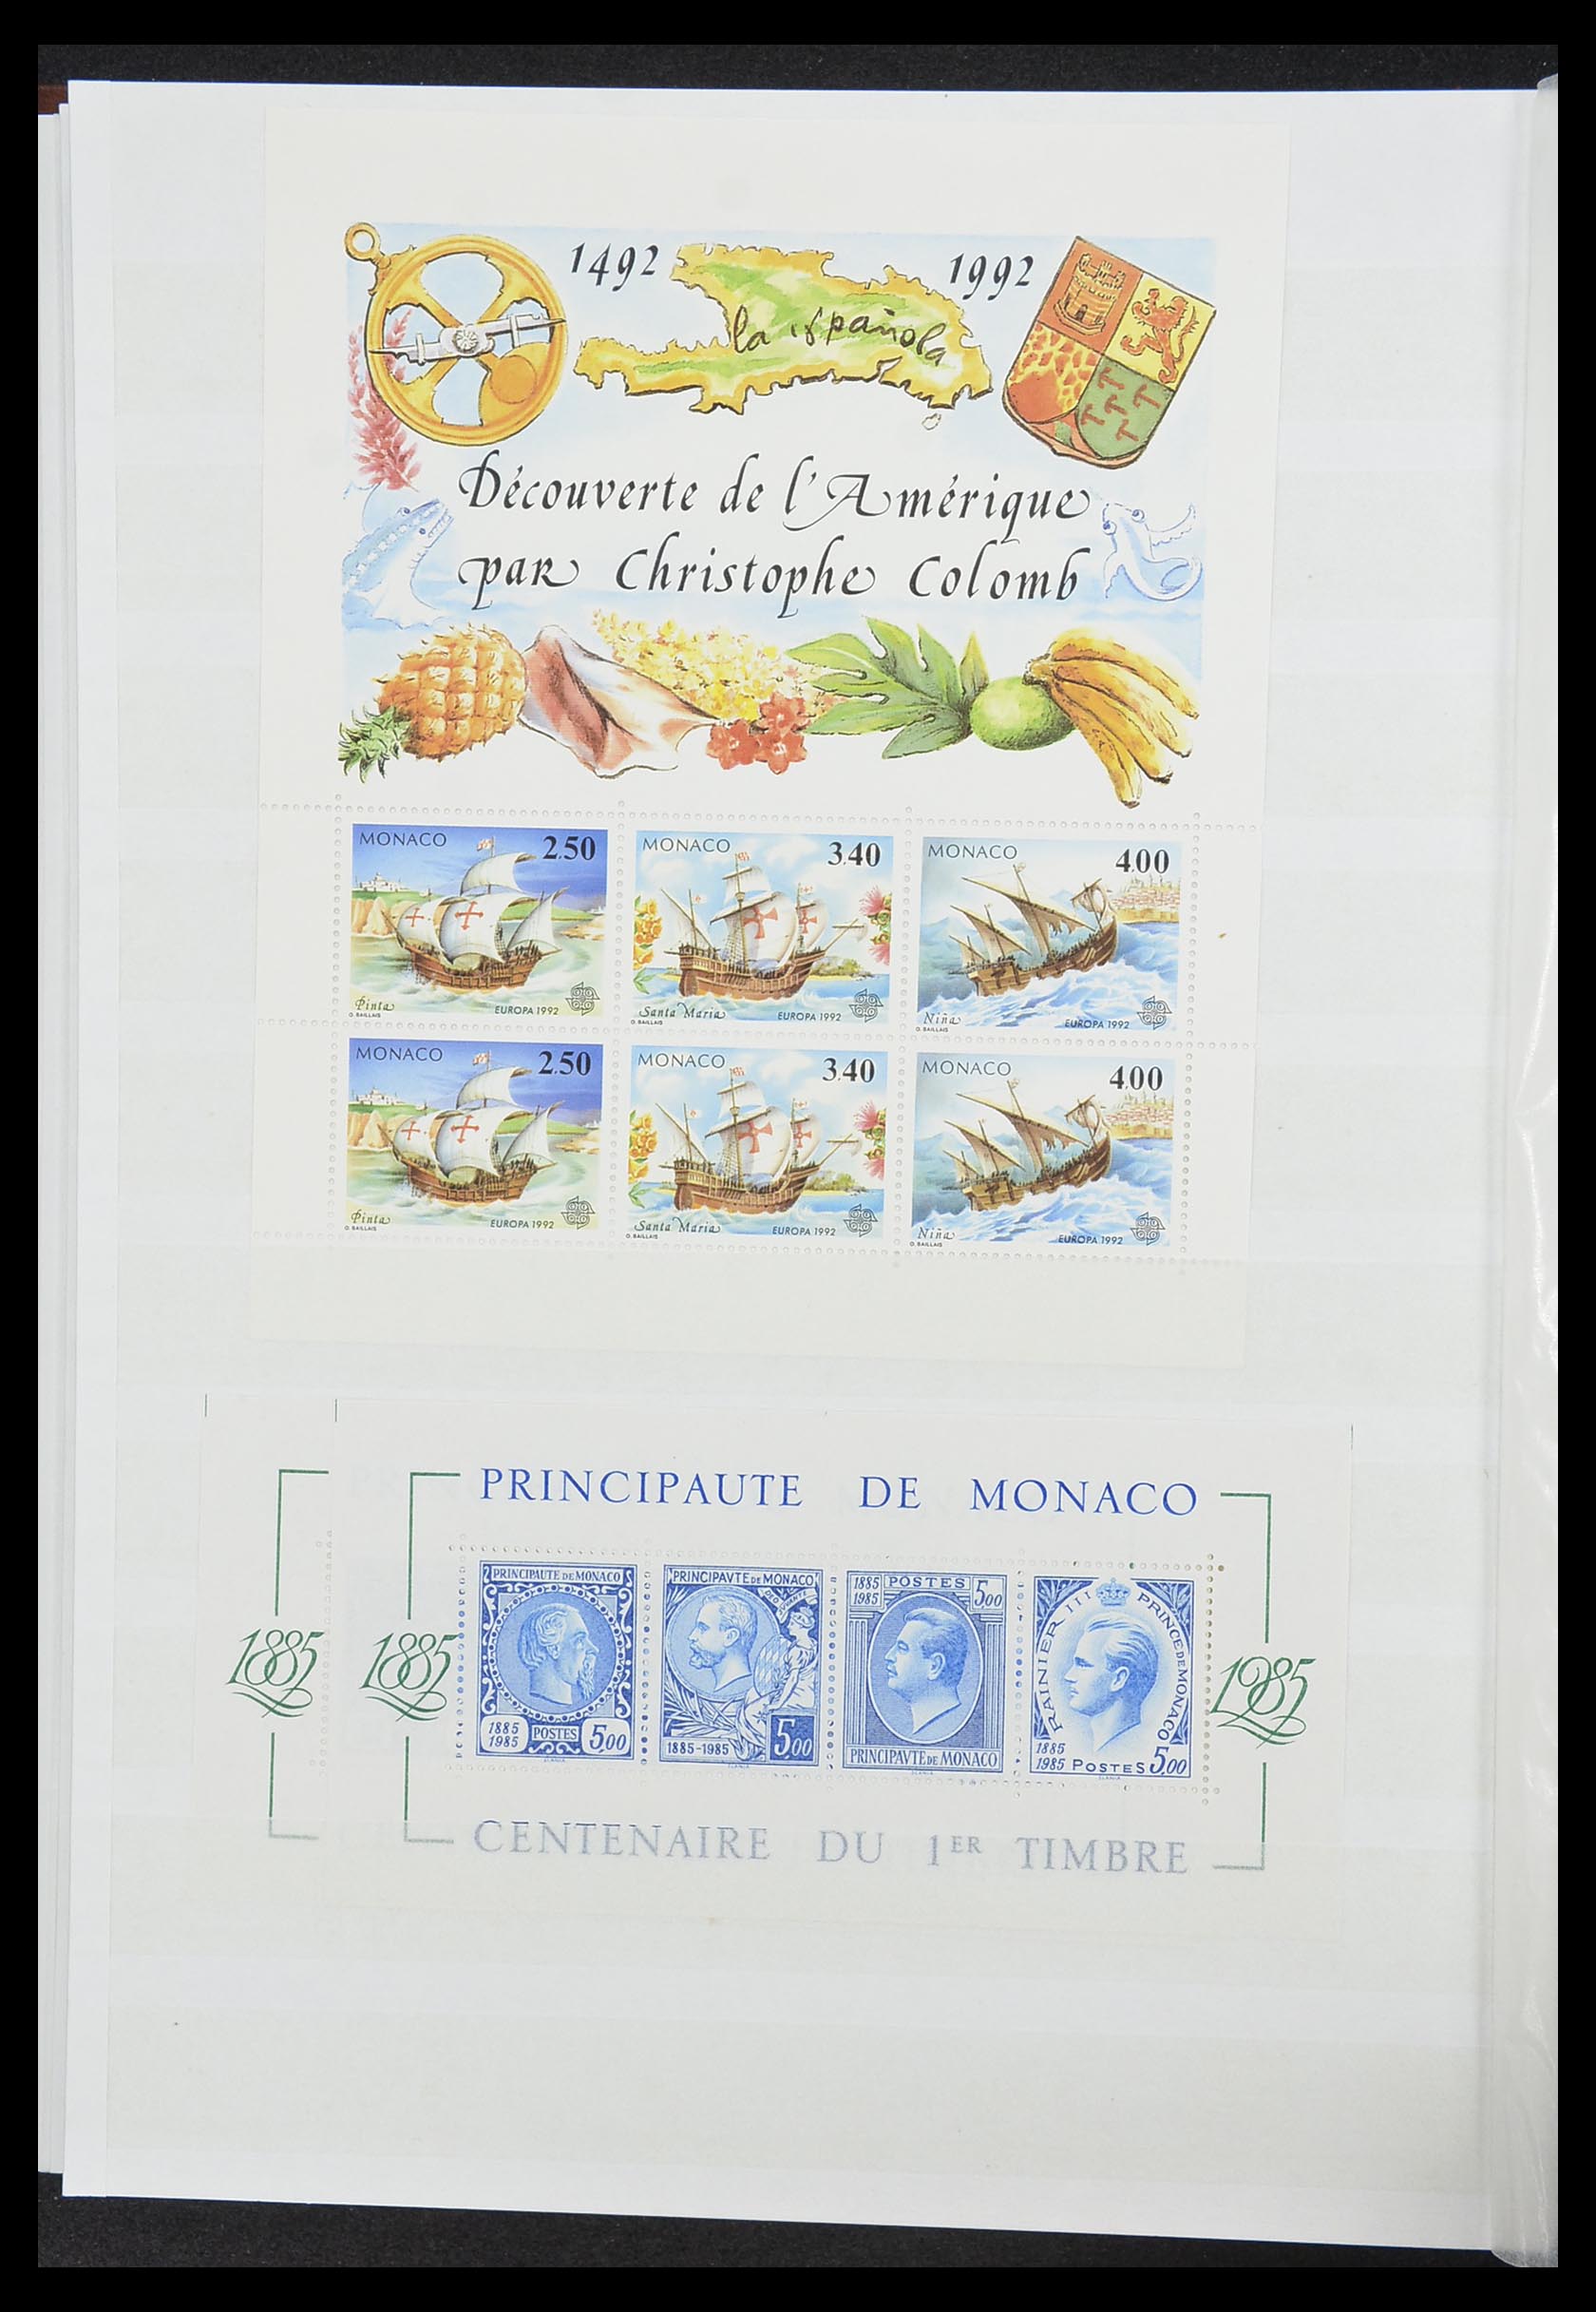 33833 018 - Stamp collection 33833 Monaco souvenir sheets 1979-2015.